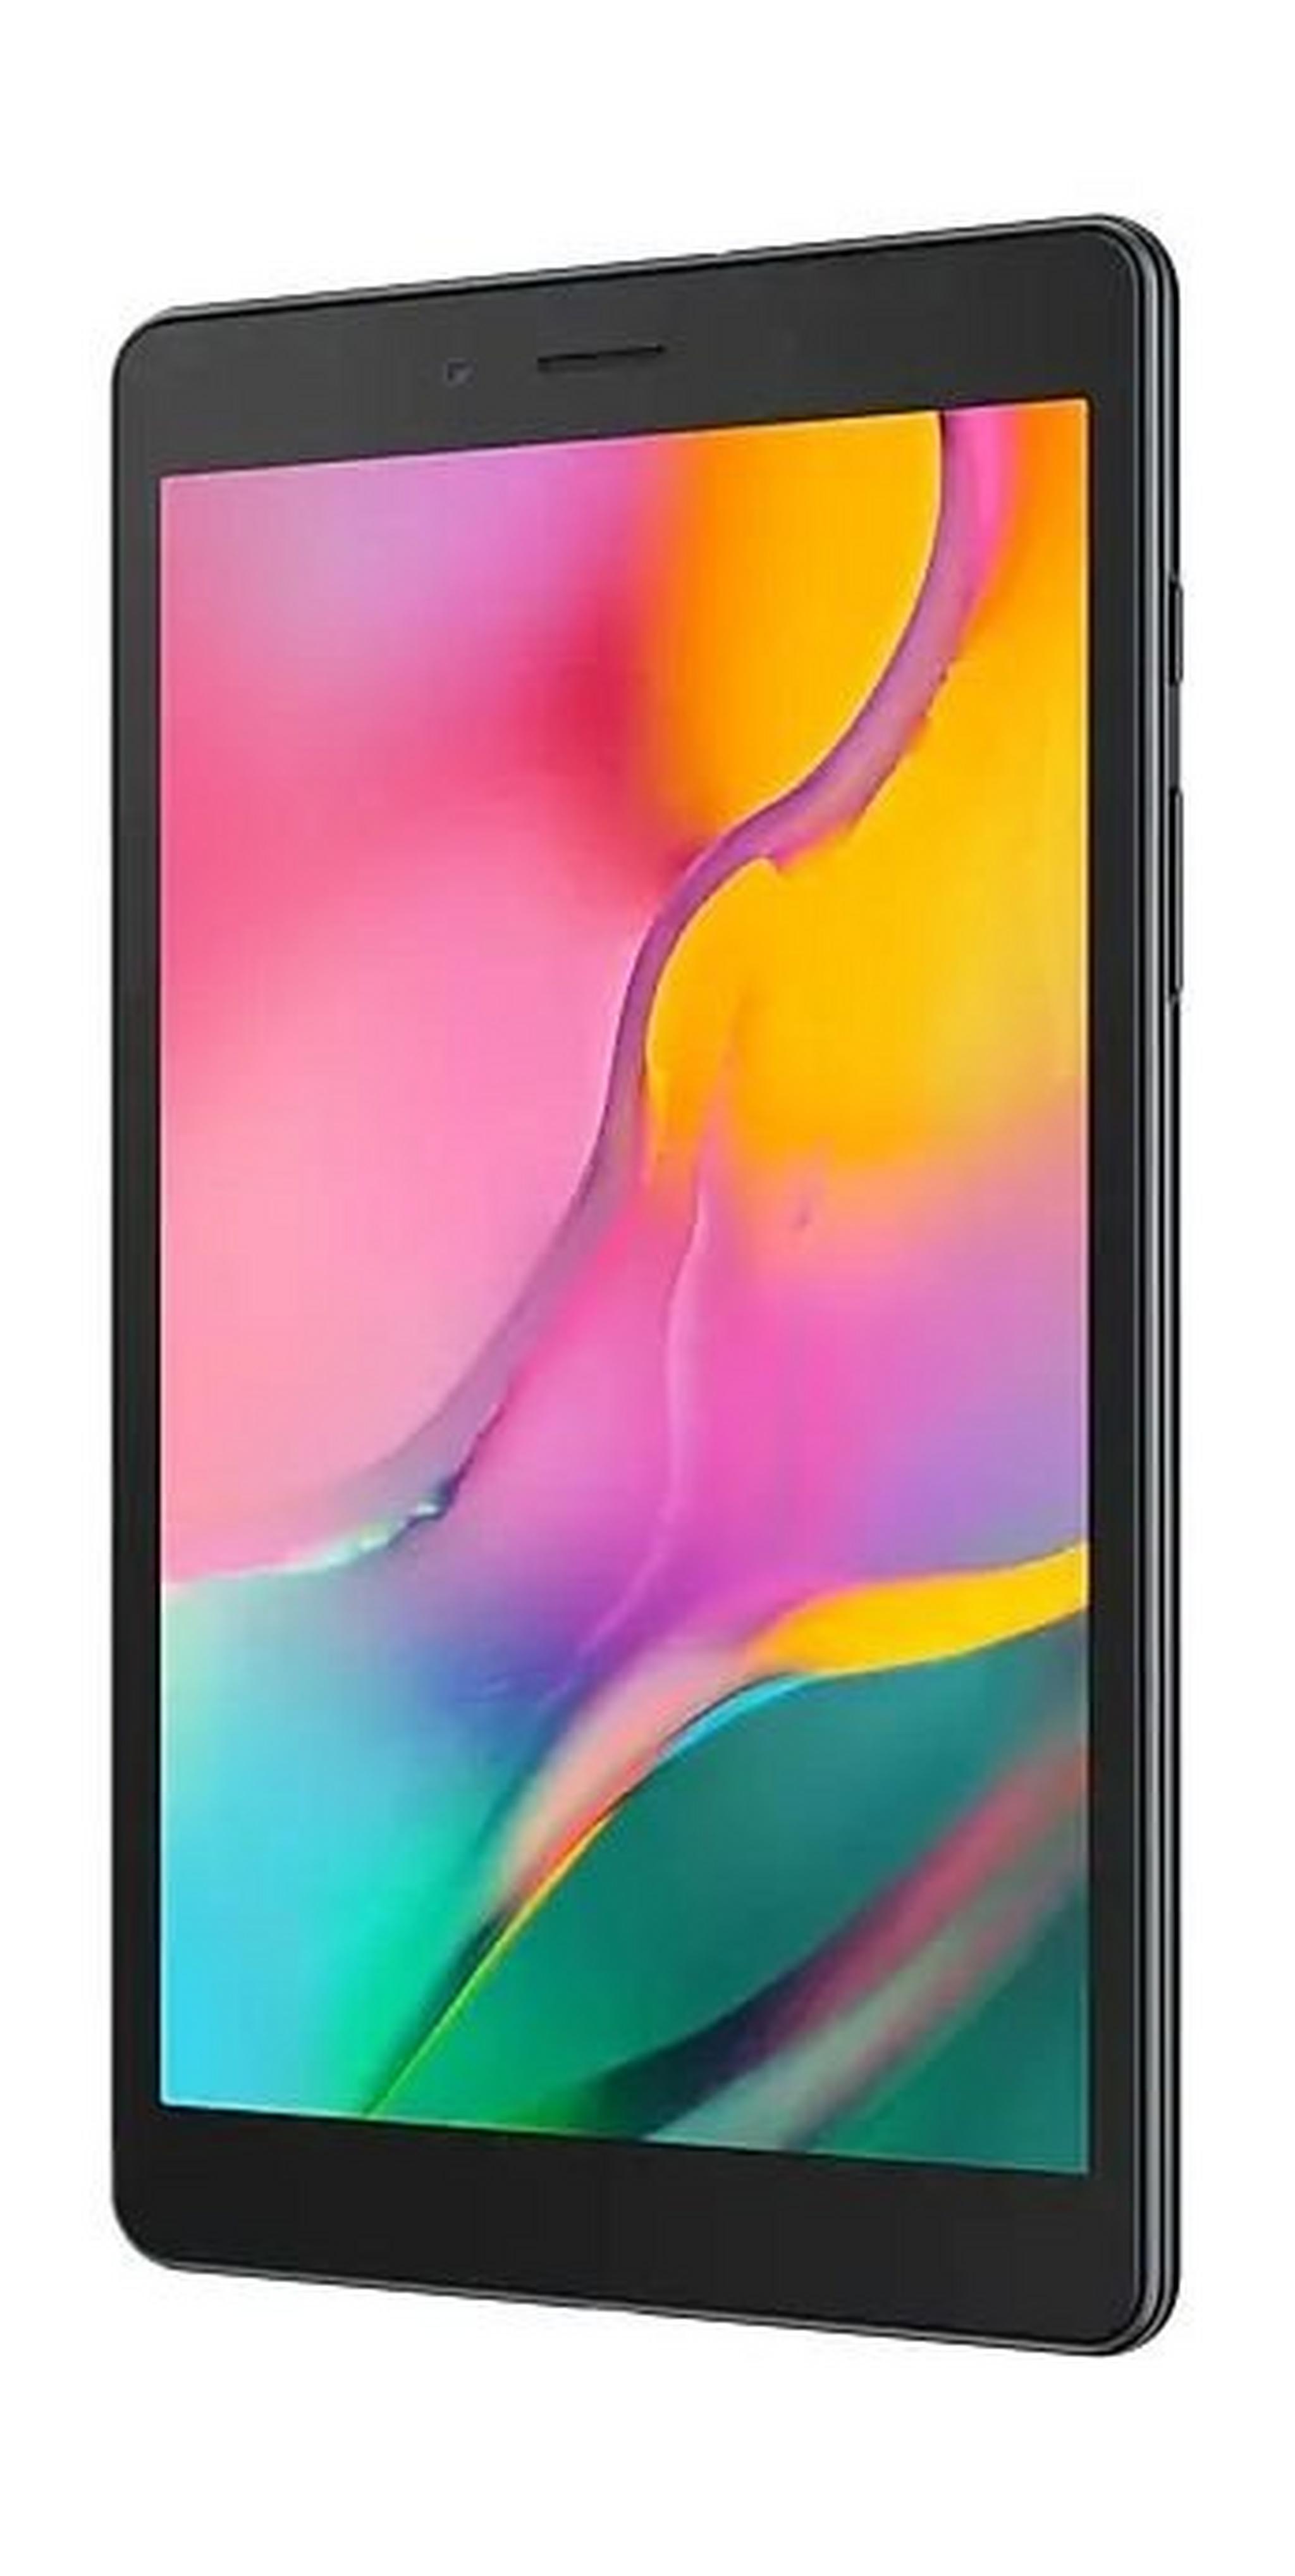 SAMSUNG Galaxy Tab A 2019 8-inch 32GB 4G LTE Tablet - Black